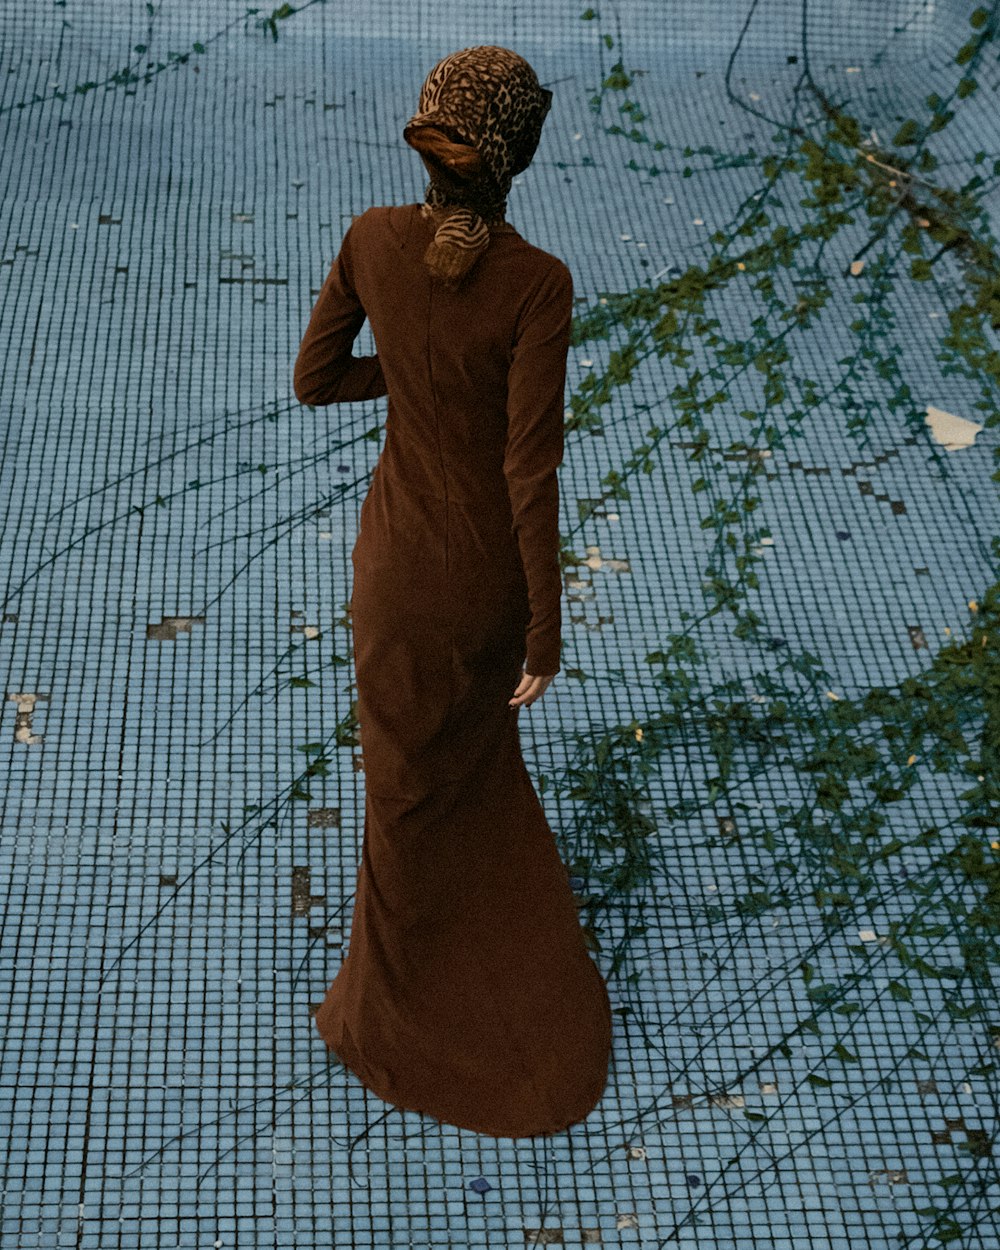 a woman in a brown dress is walking